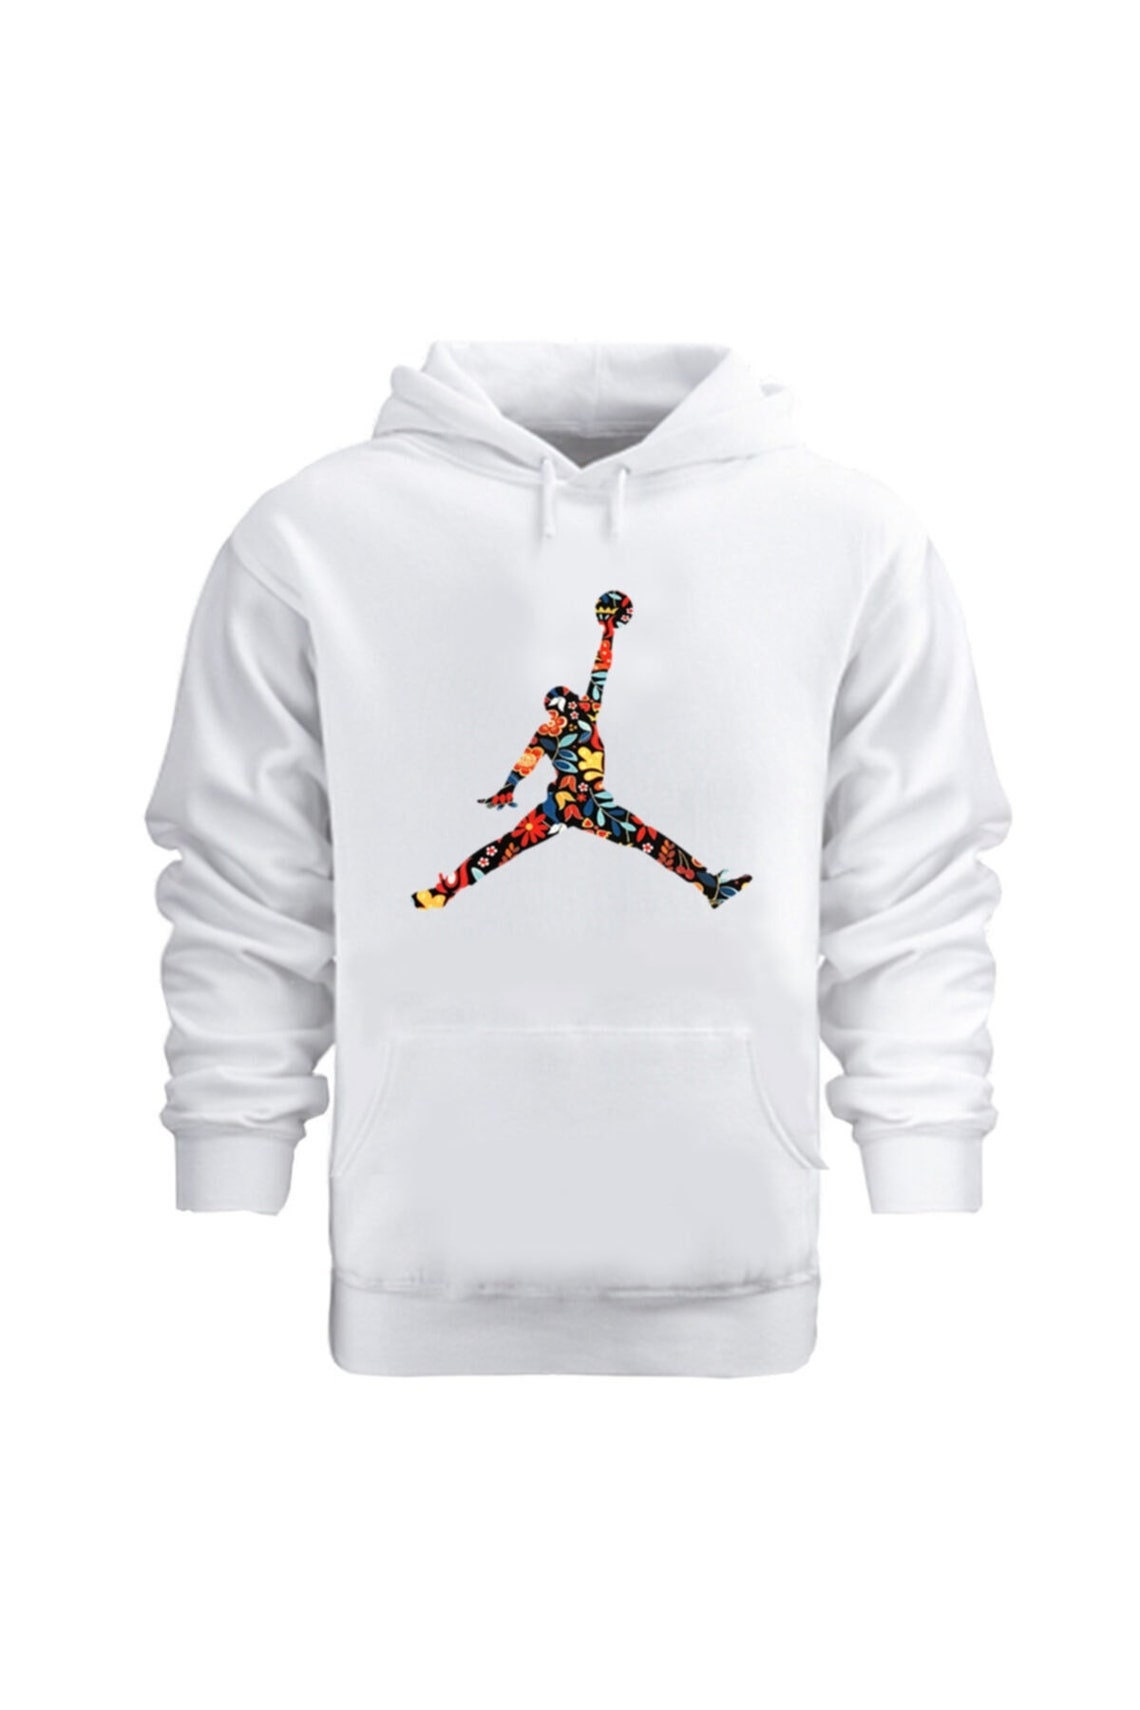 Air Jordan Hoodie Iconic Jumpman Cotton Printed Hoodie - Etsy